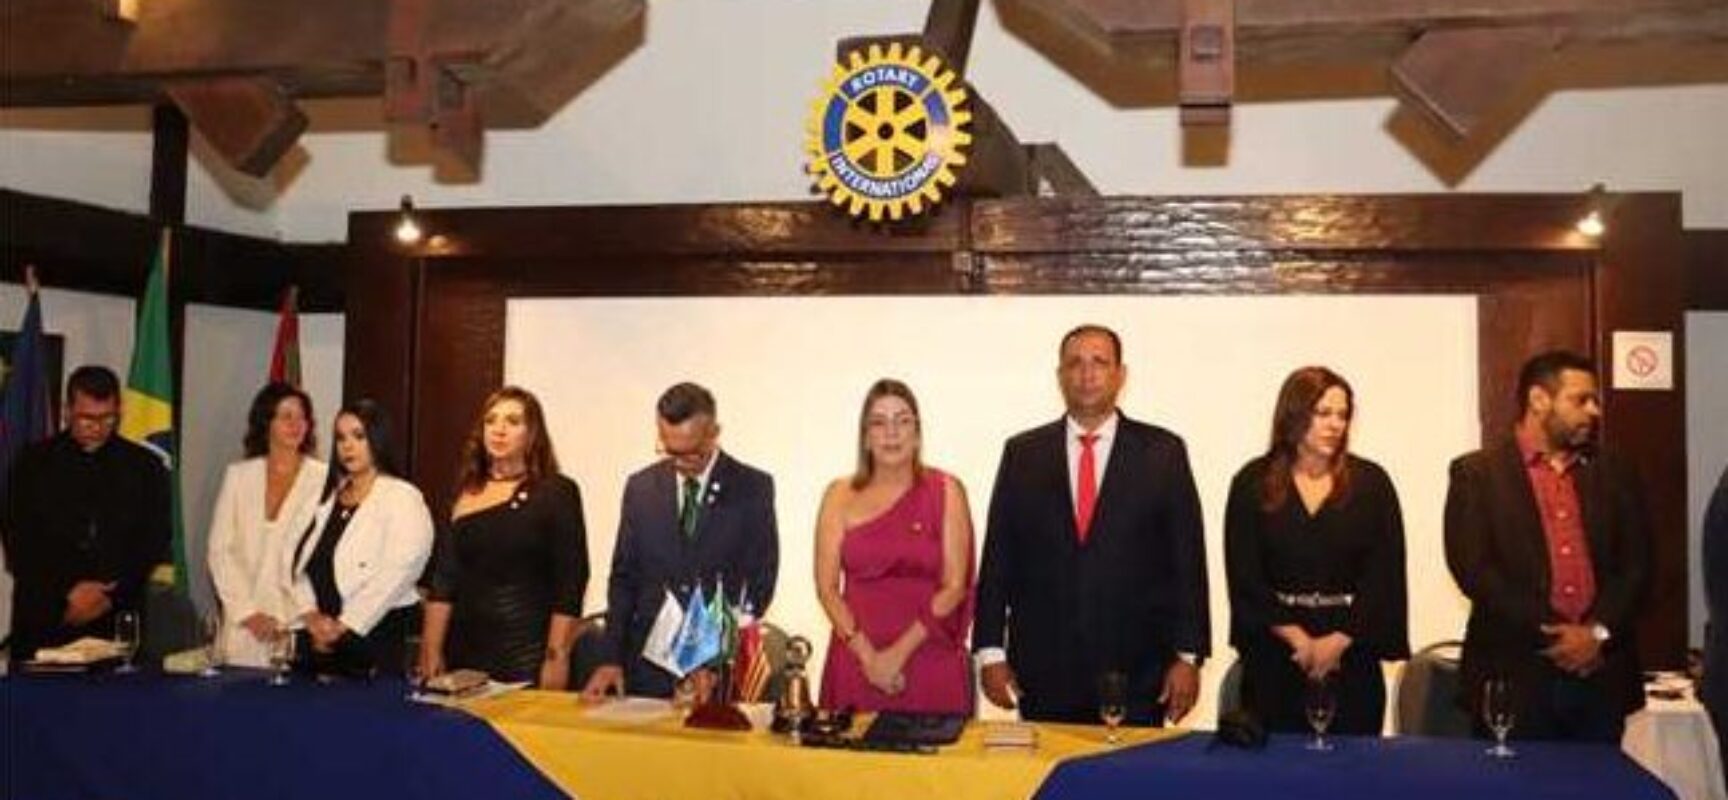 Solenidade marca posse do Conselho Diretor do Rotary Club de Ilhéus para gestão 2023-24